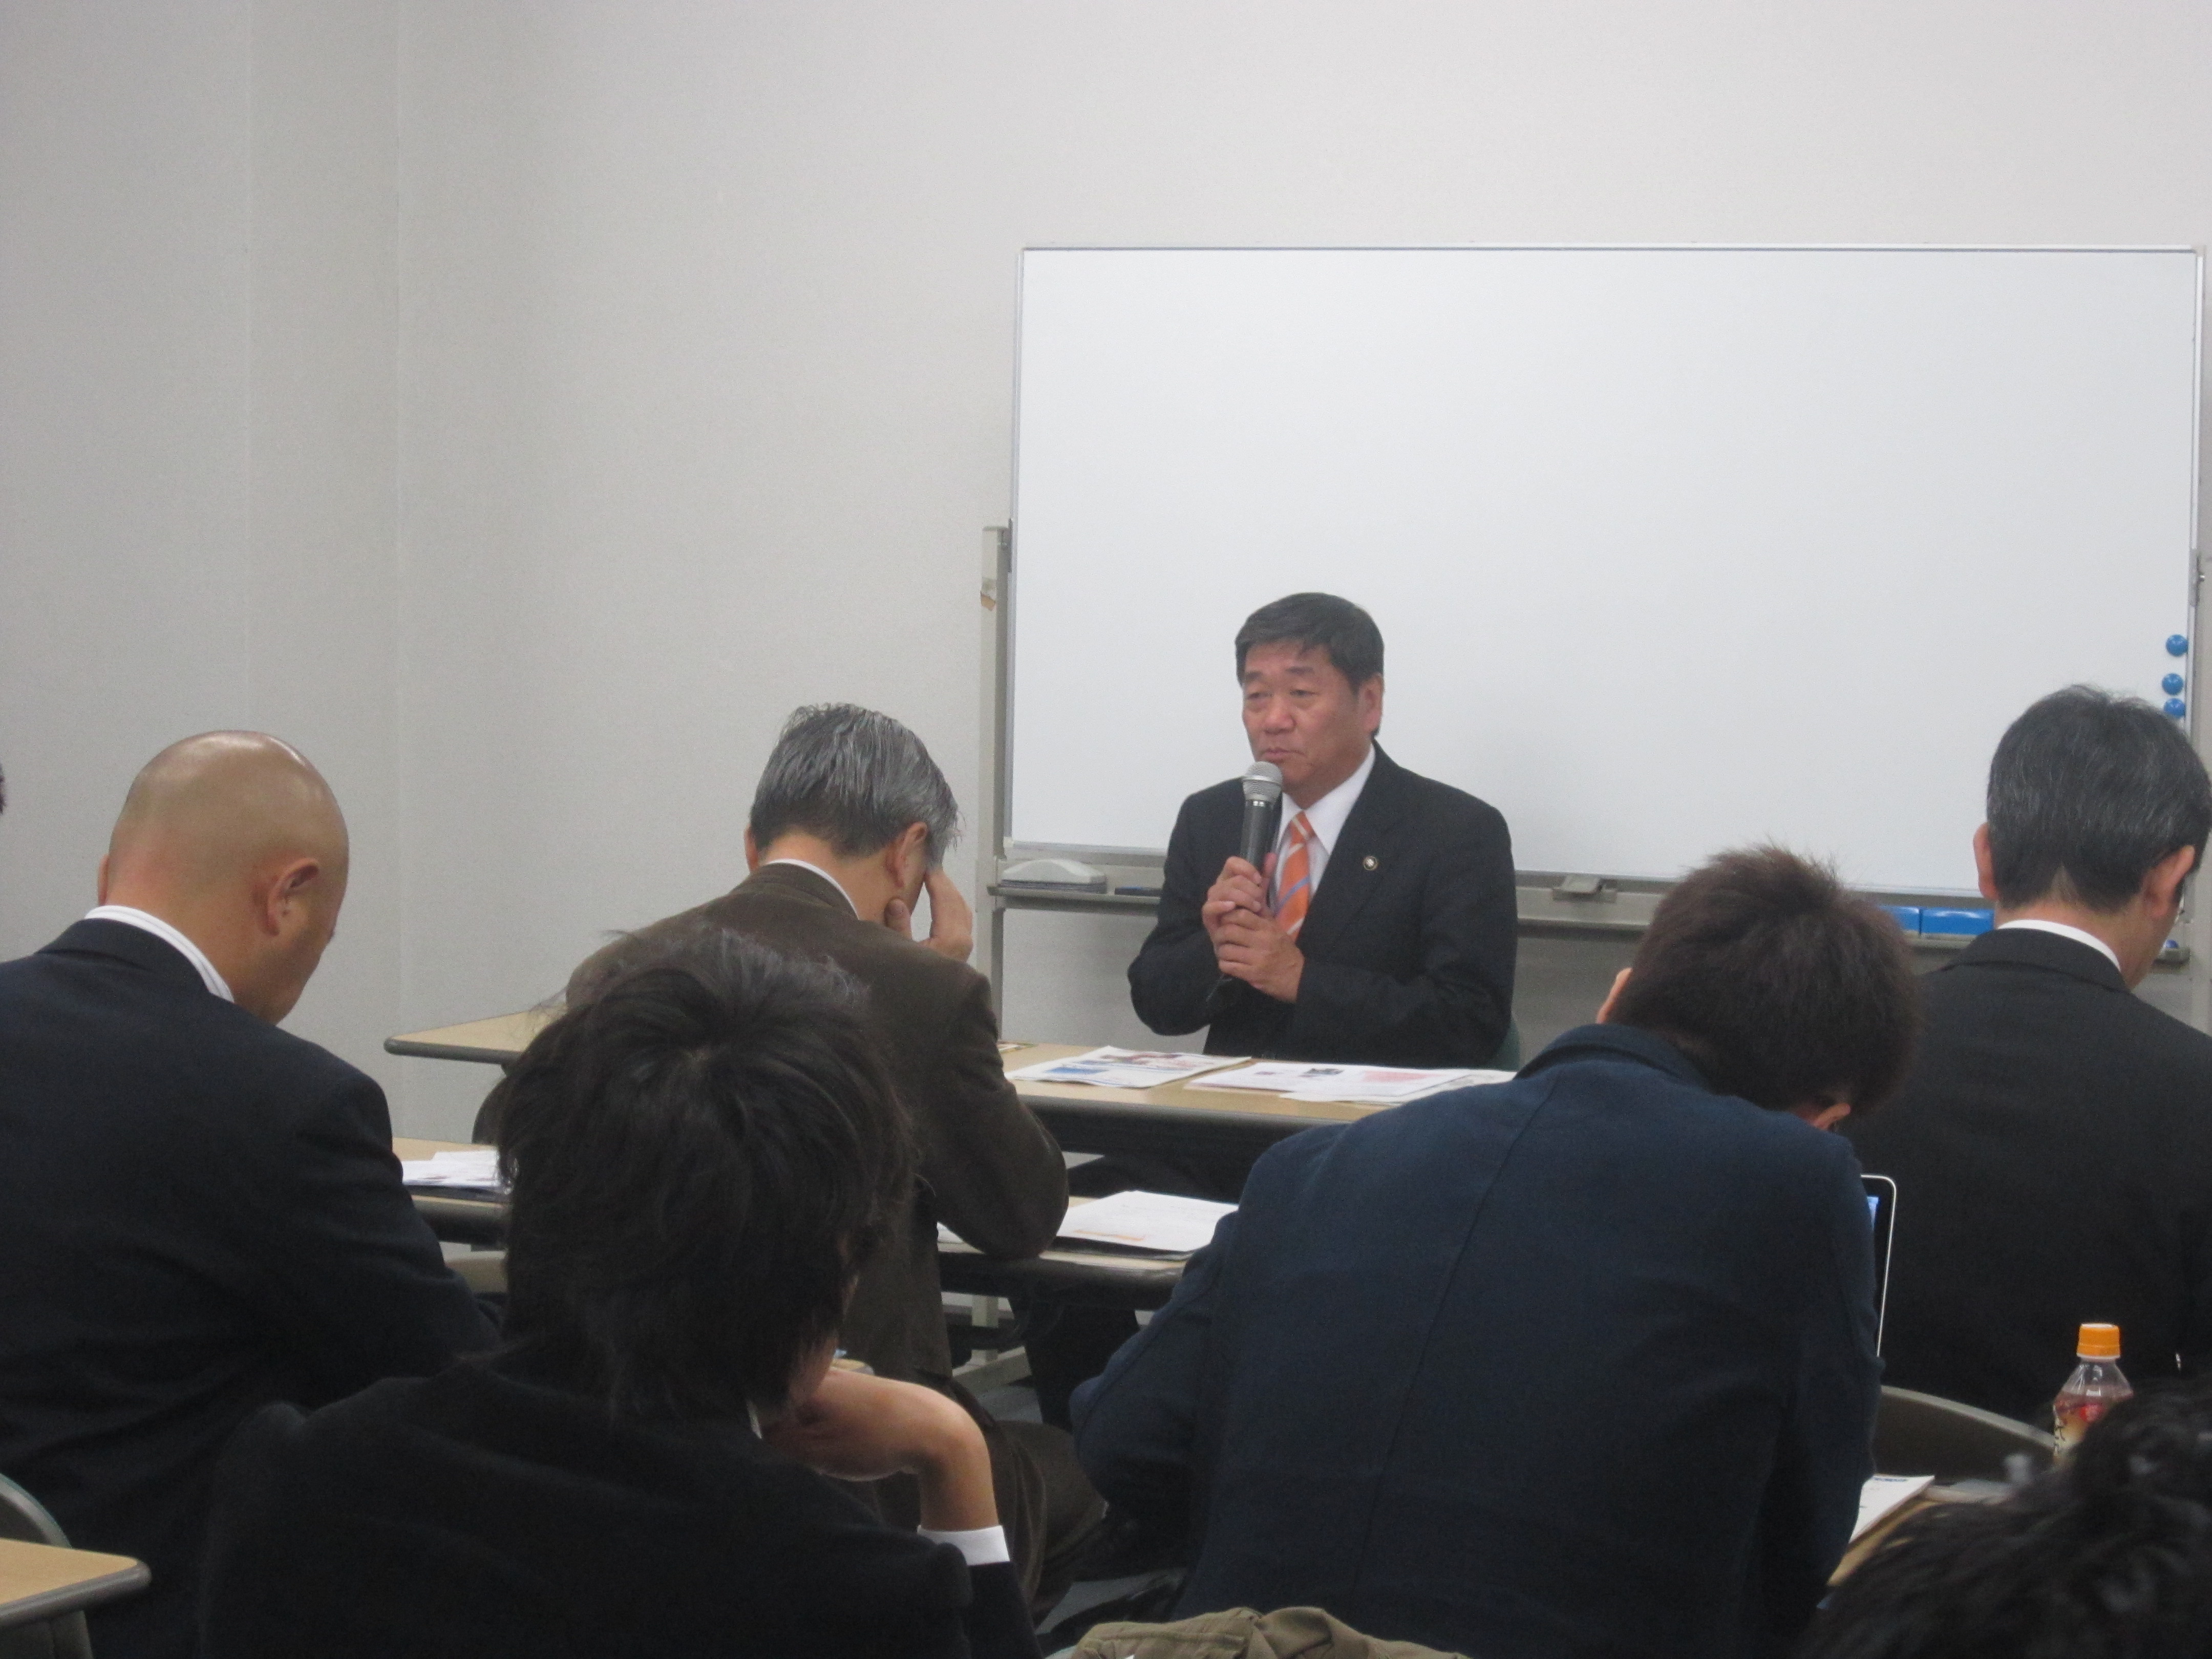 IMG 1914 - 2012年11月27日AOsuki第4回勉強会八戸市小林市長